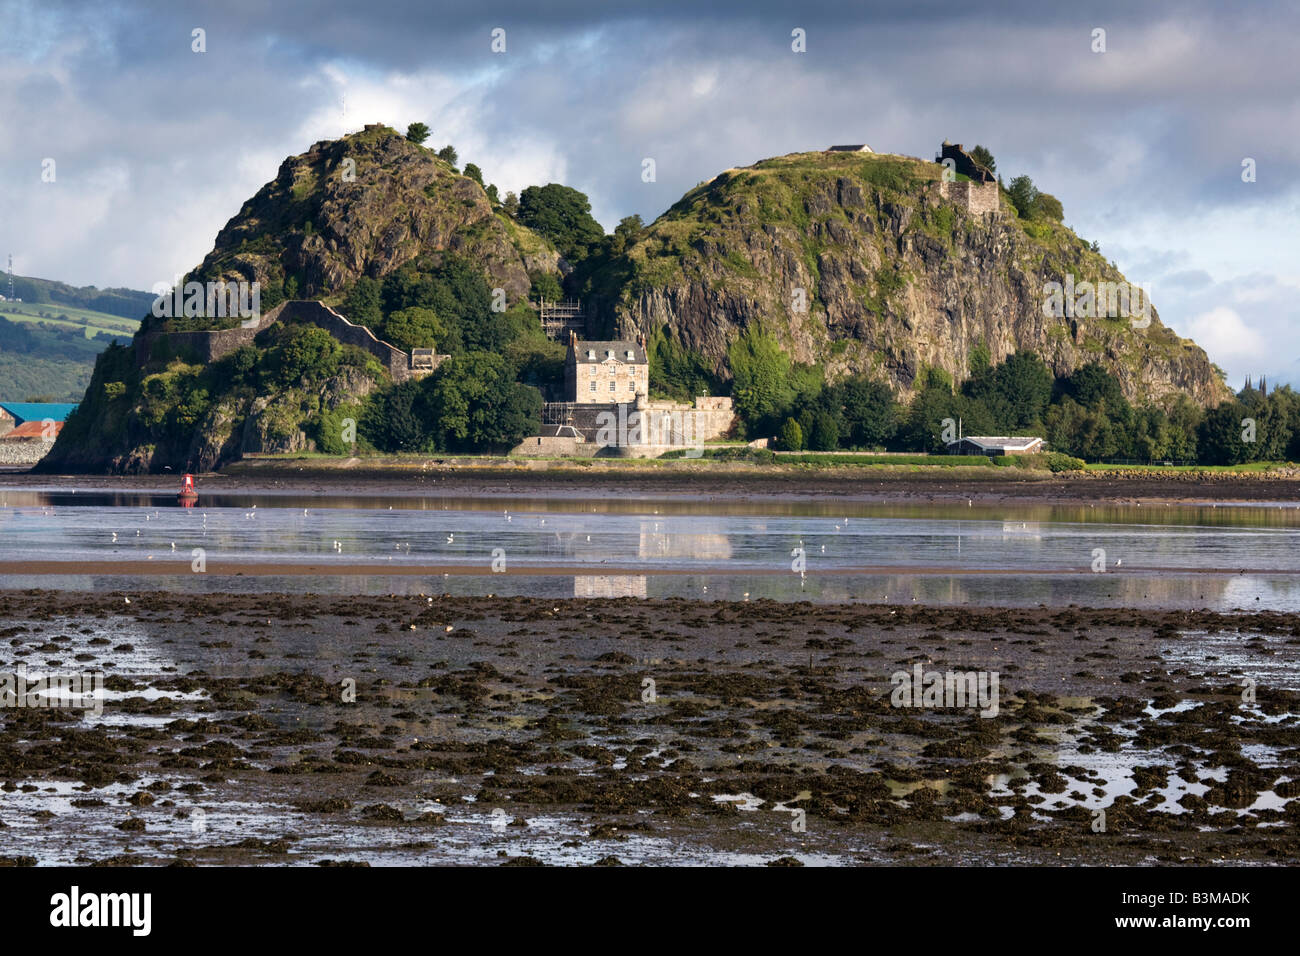 Dumbarton Castle et château de Dumbarton à marée basse à l'ouest de traversier sur la rivière Clyde, en Écosse. Banque D'Images